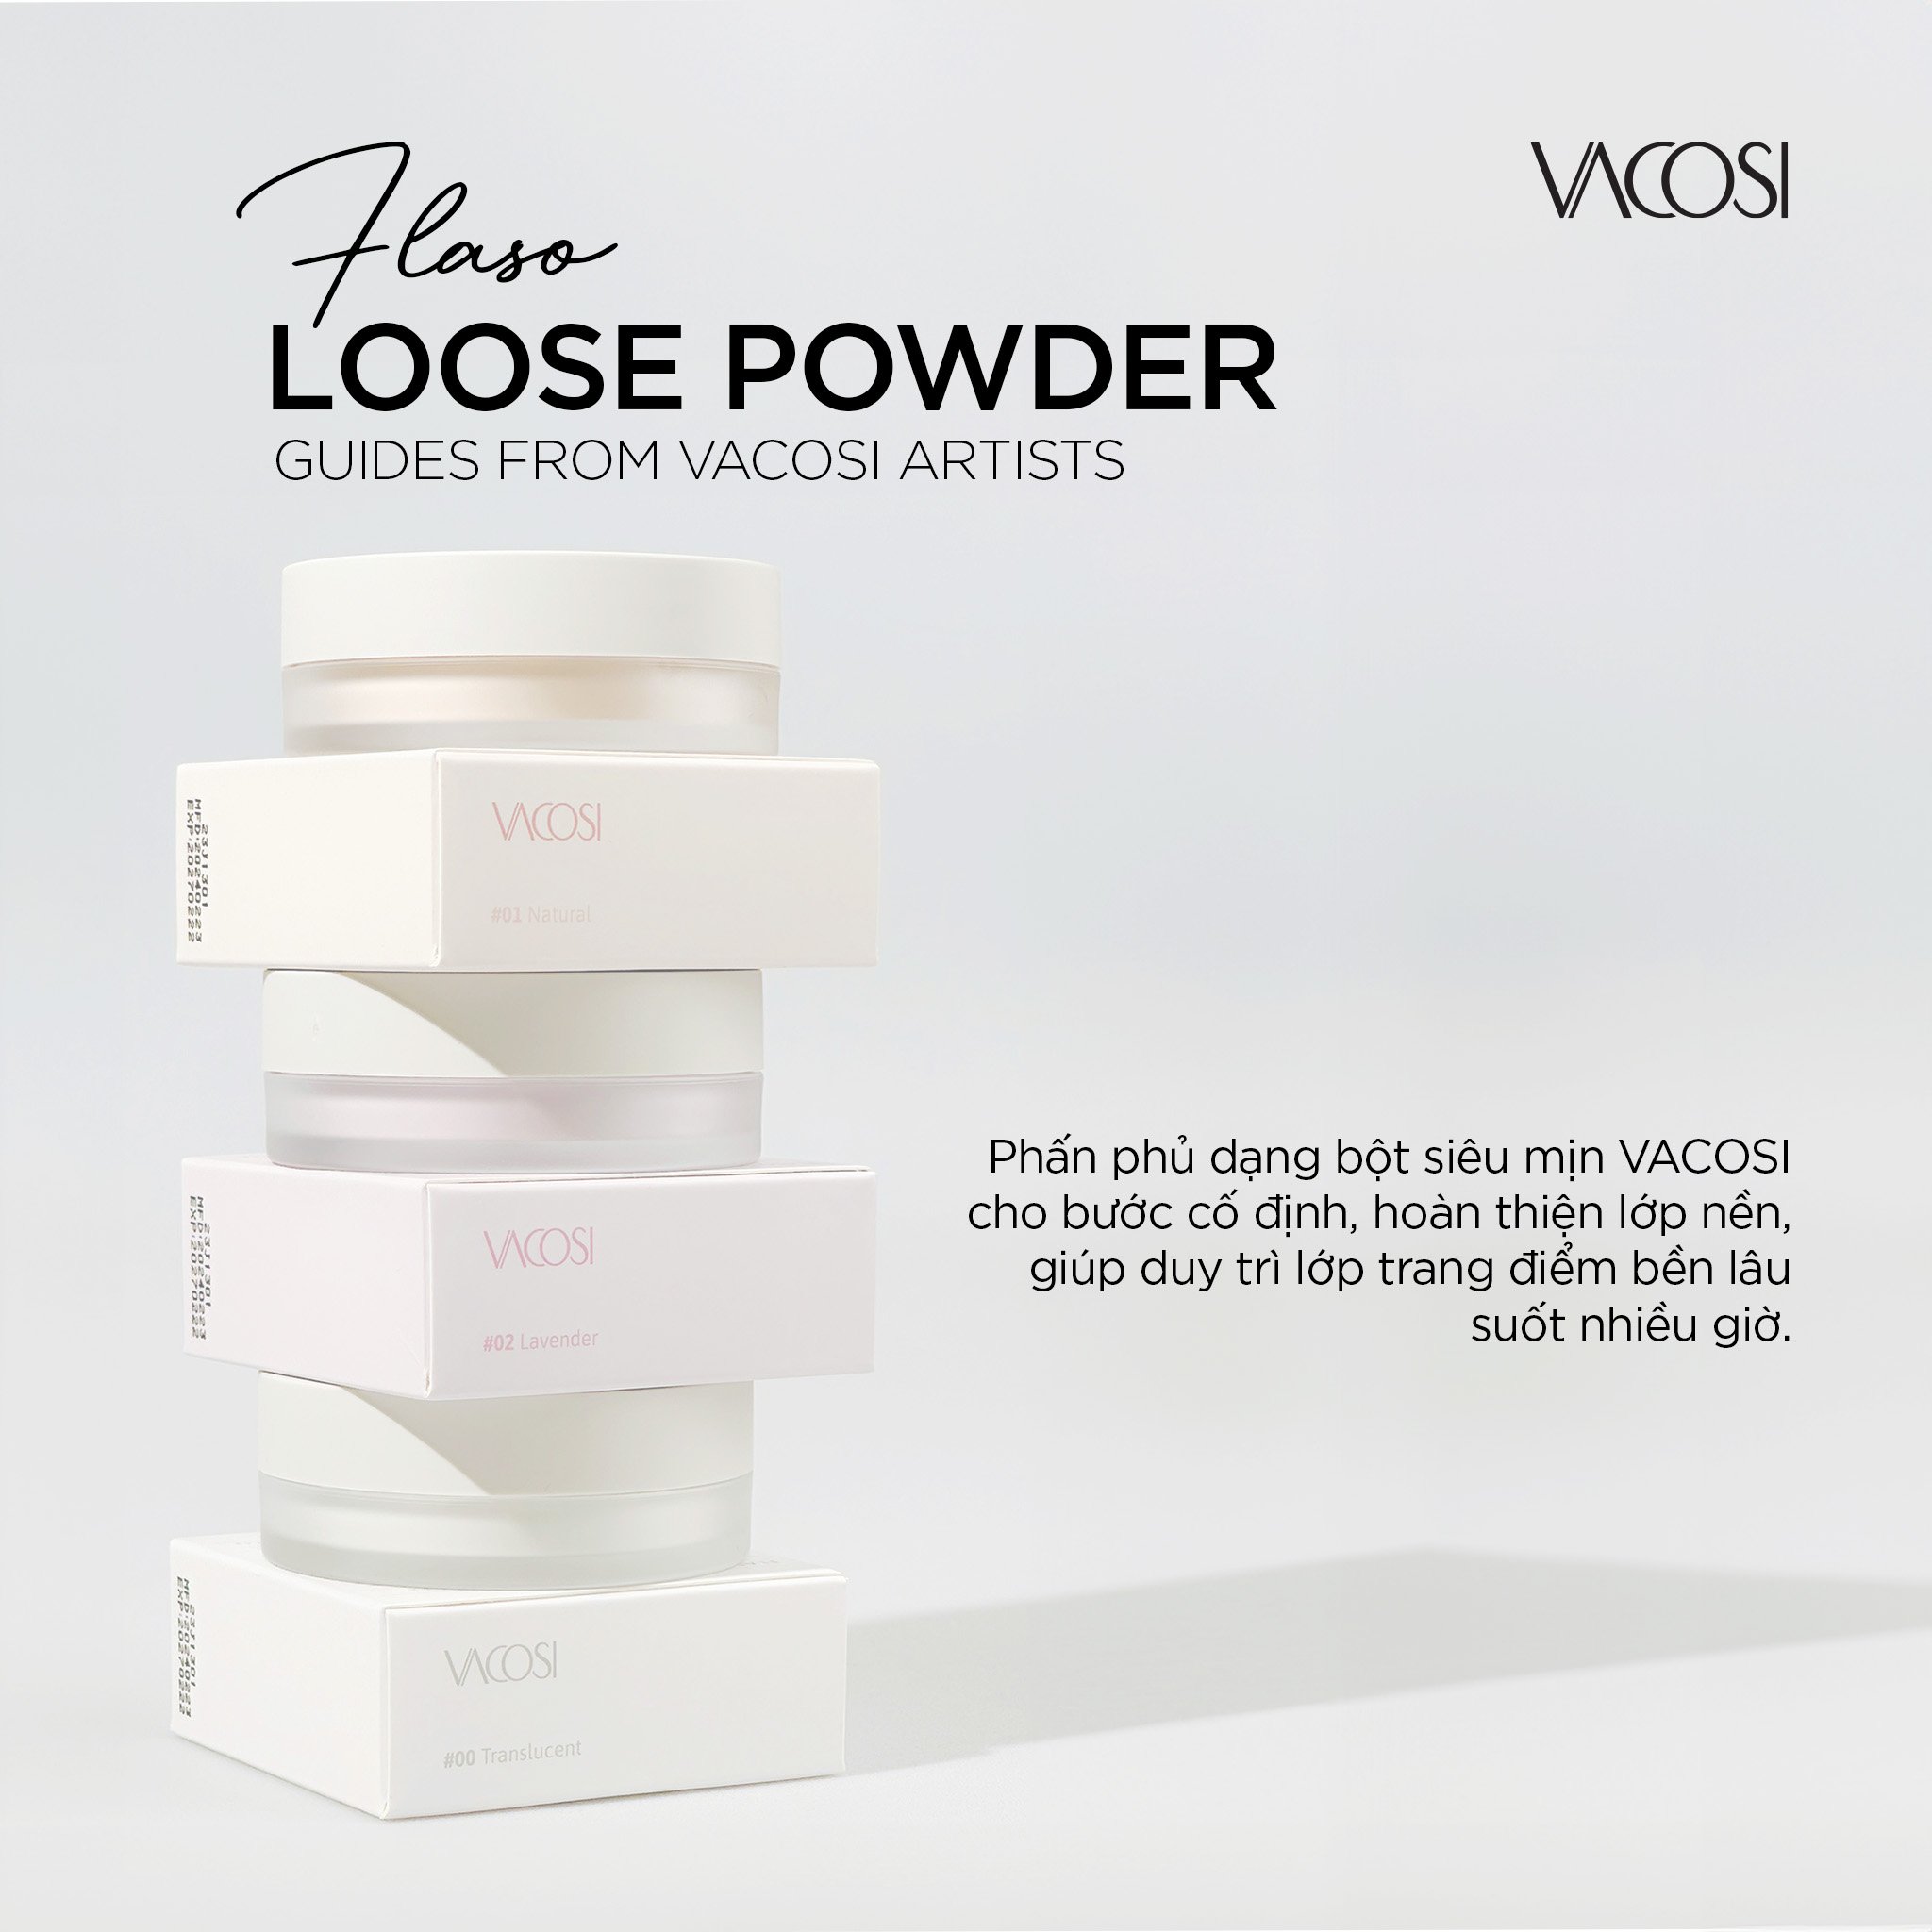 Phấn phủ bột siêu mịn VACOSI FLASO LOOSE POWDER - VP11